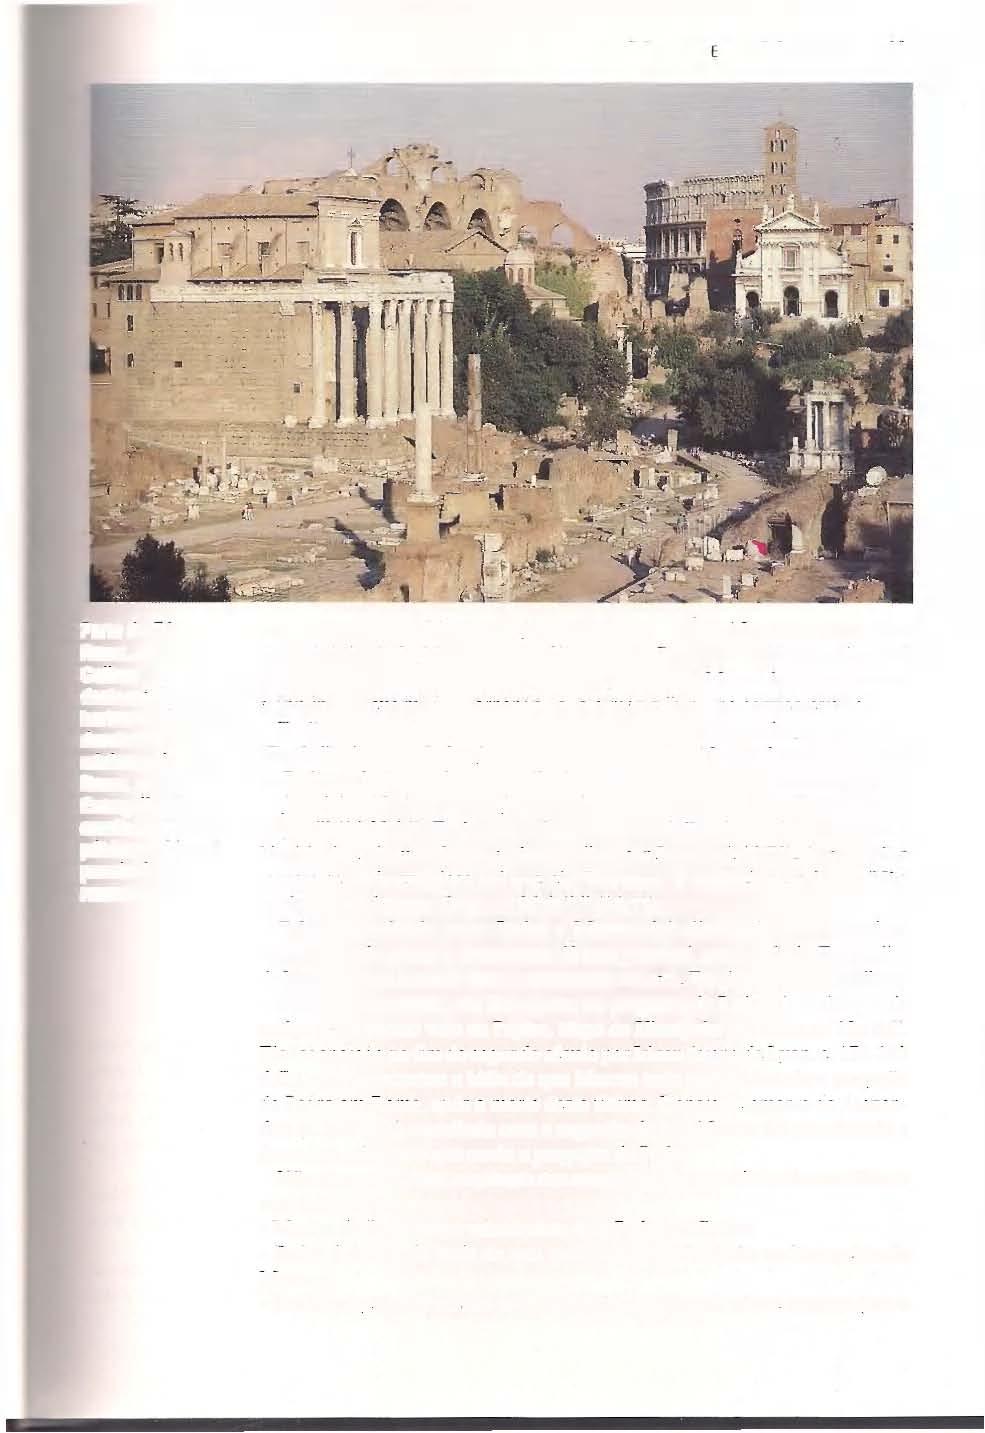 MARCOS E SUA MENSAGEM 19 Parte do Fórum, Roma, com o Coliseu destacando-se no horizonte.